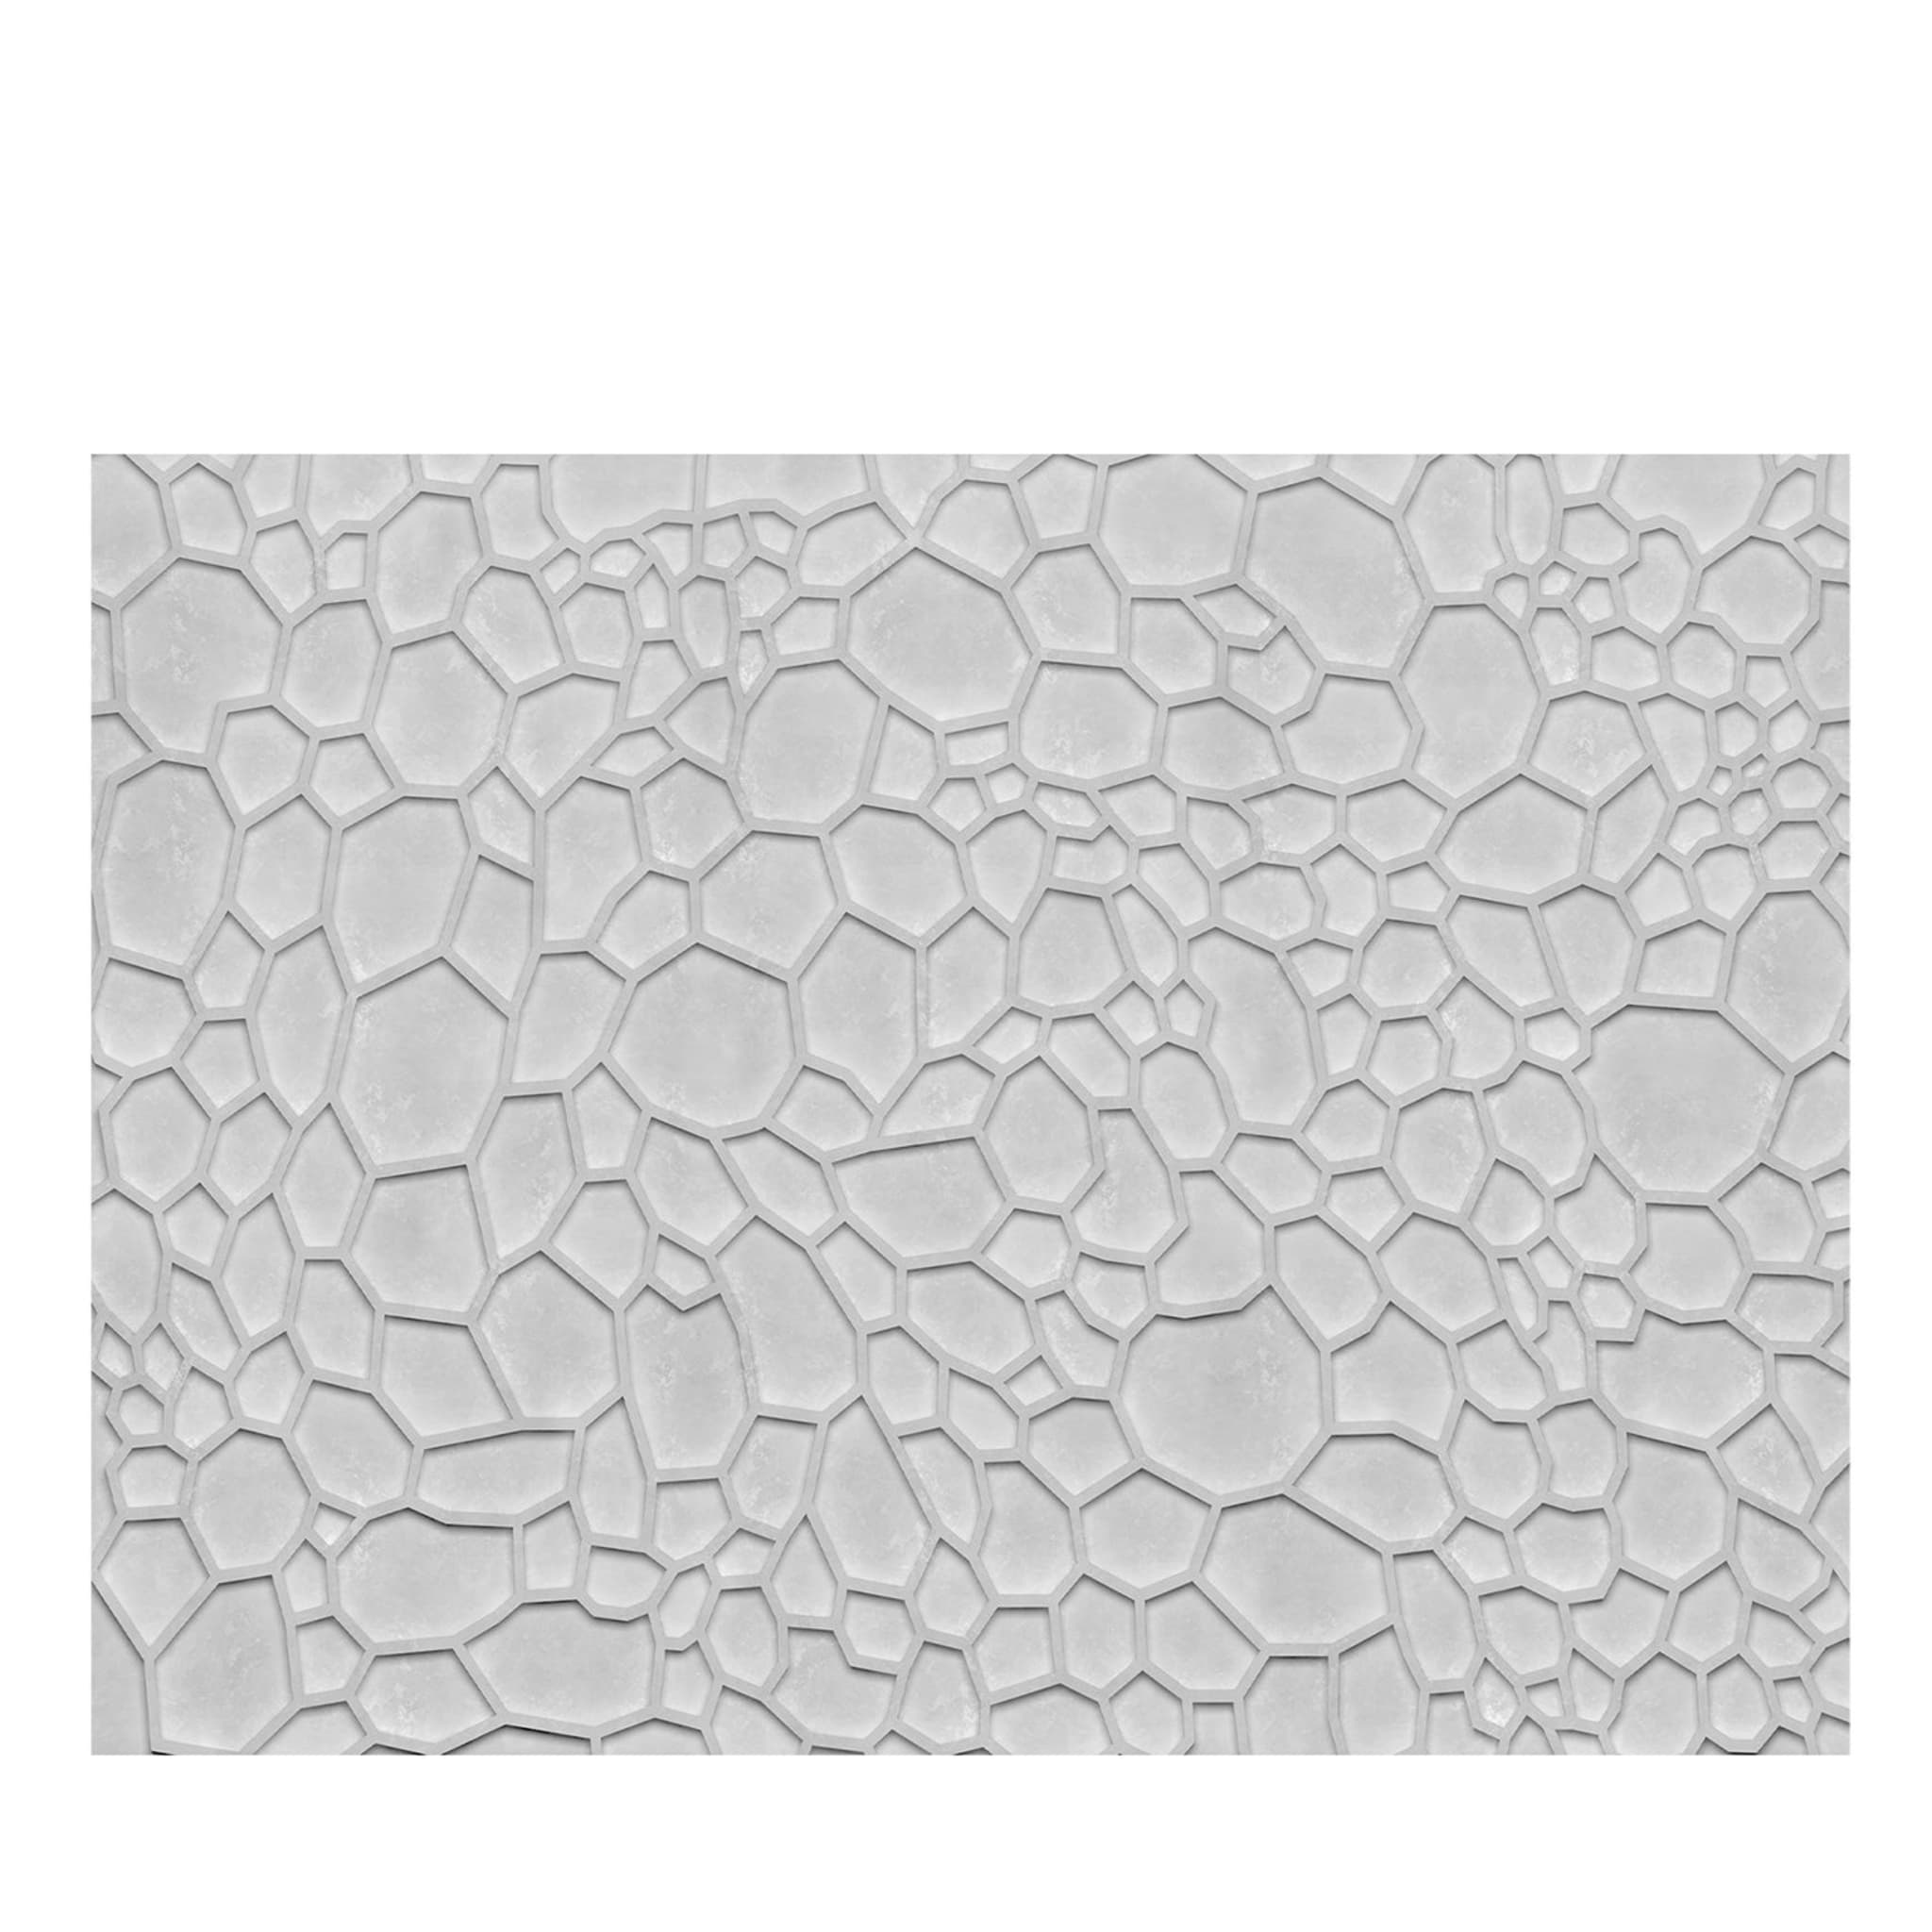 Gray Abstract Wallpaper #9 - Main view